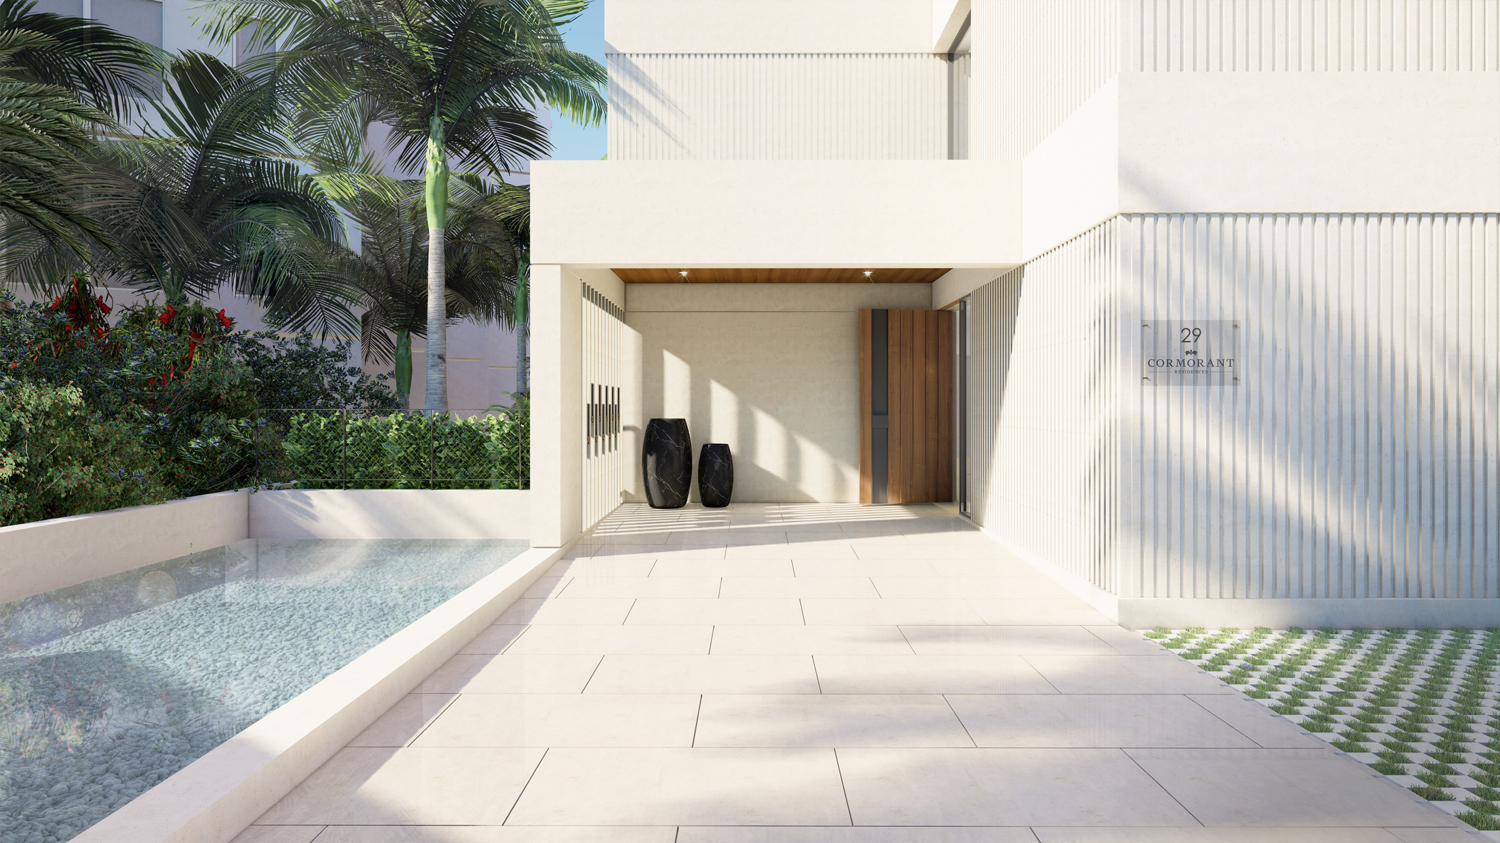 Wunderschönes Duplex-Penthouse mit privatem Pool, Dachterrasse und Meerblick in Palma